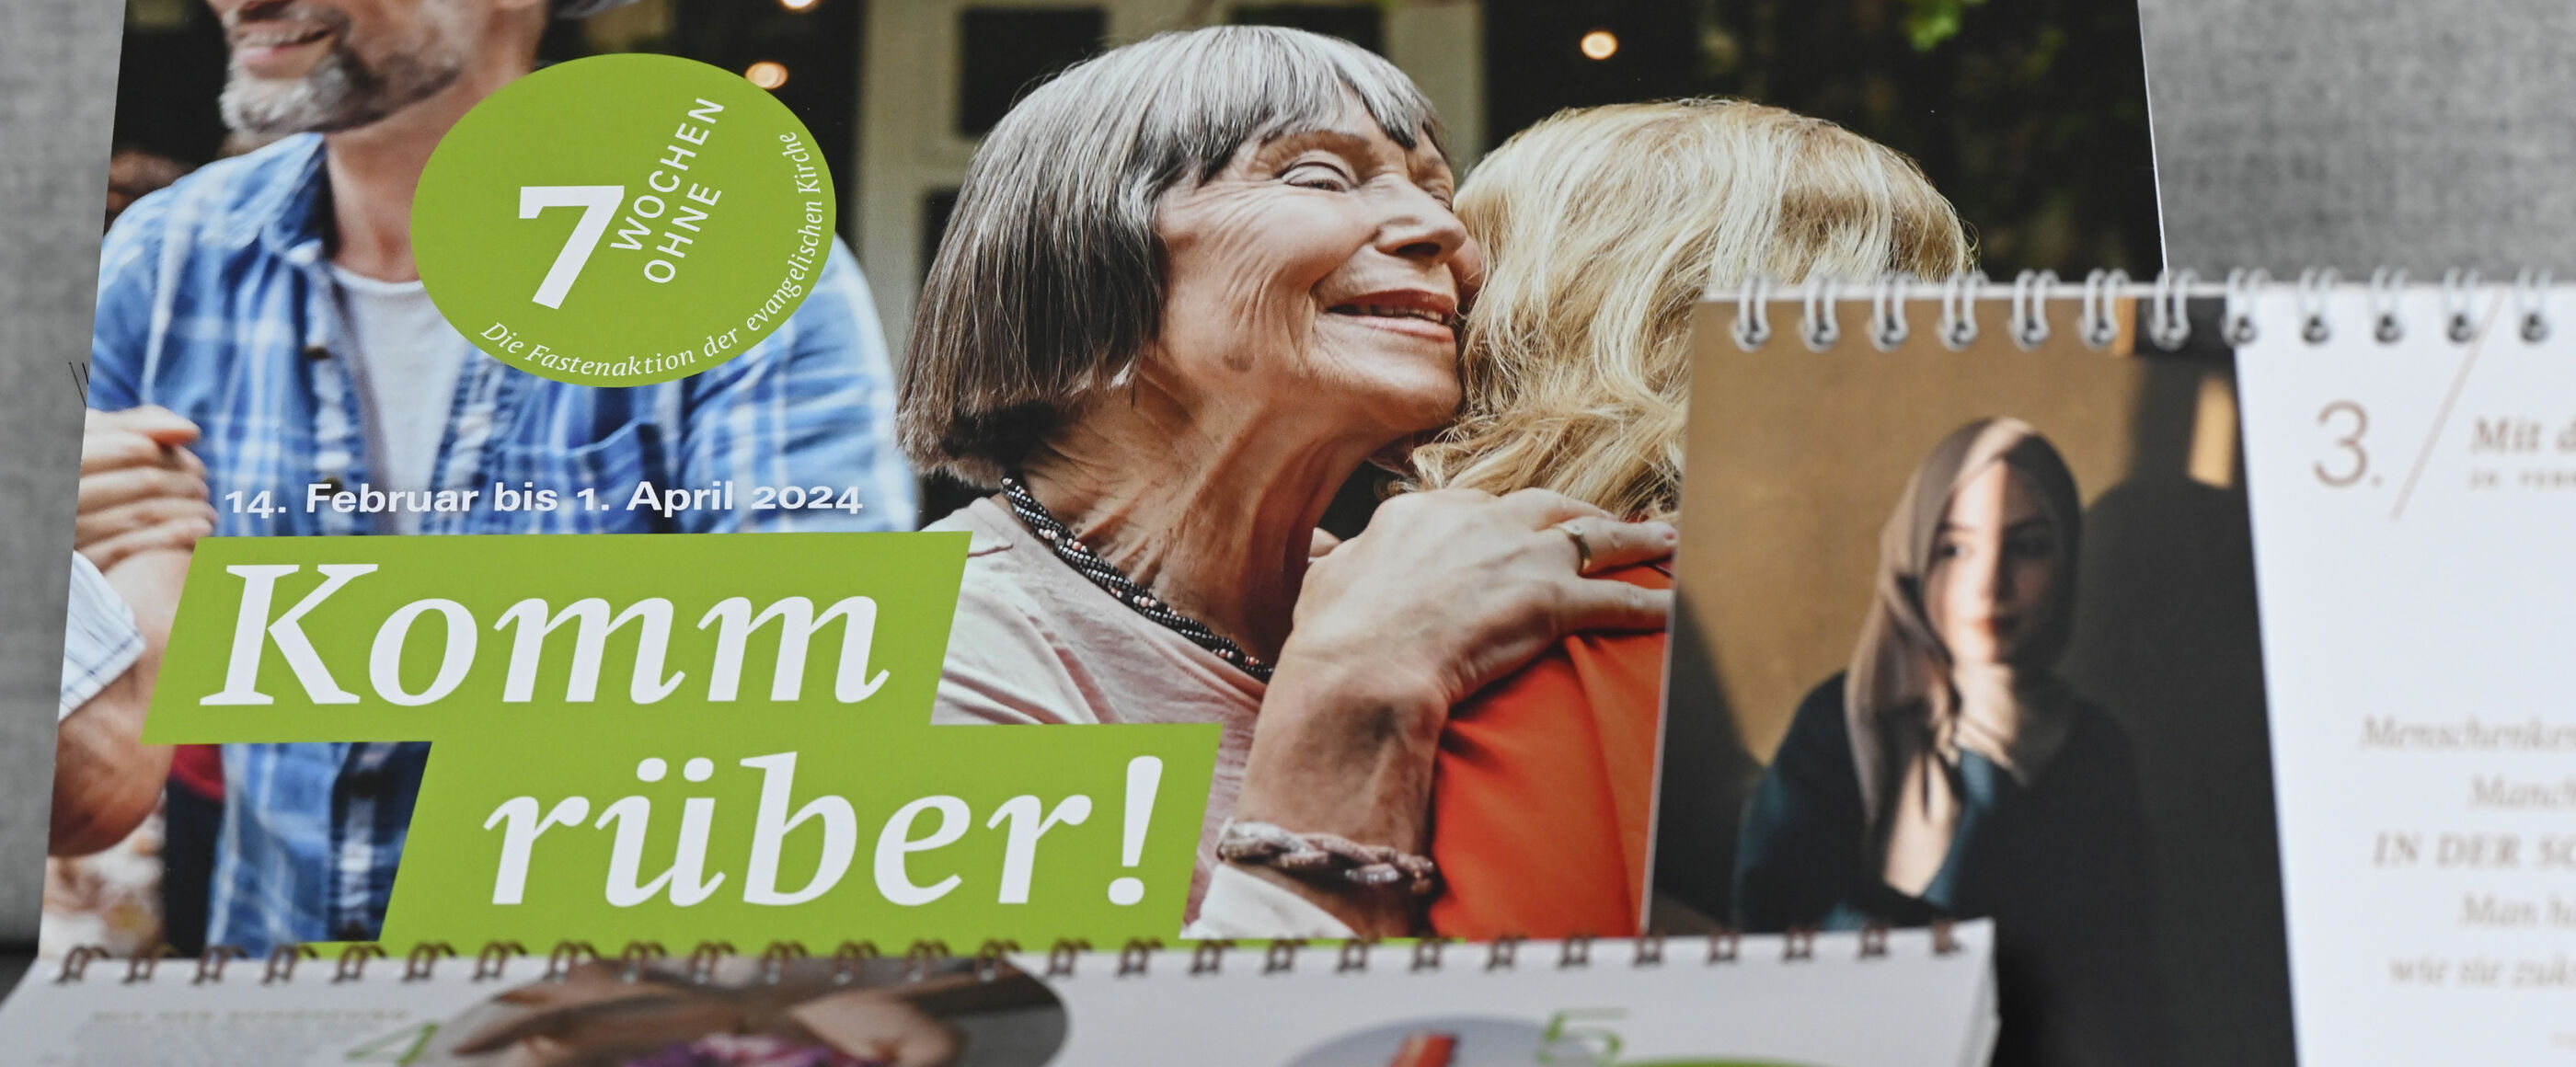 Tischkalender und Wandkalender der Fasteninitiative „7 Wochen ohne“ der evangelischen Kirche für 2024.